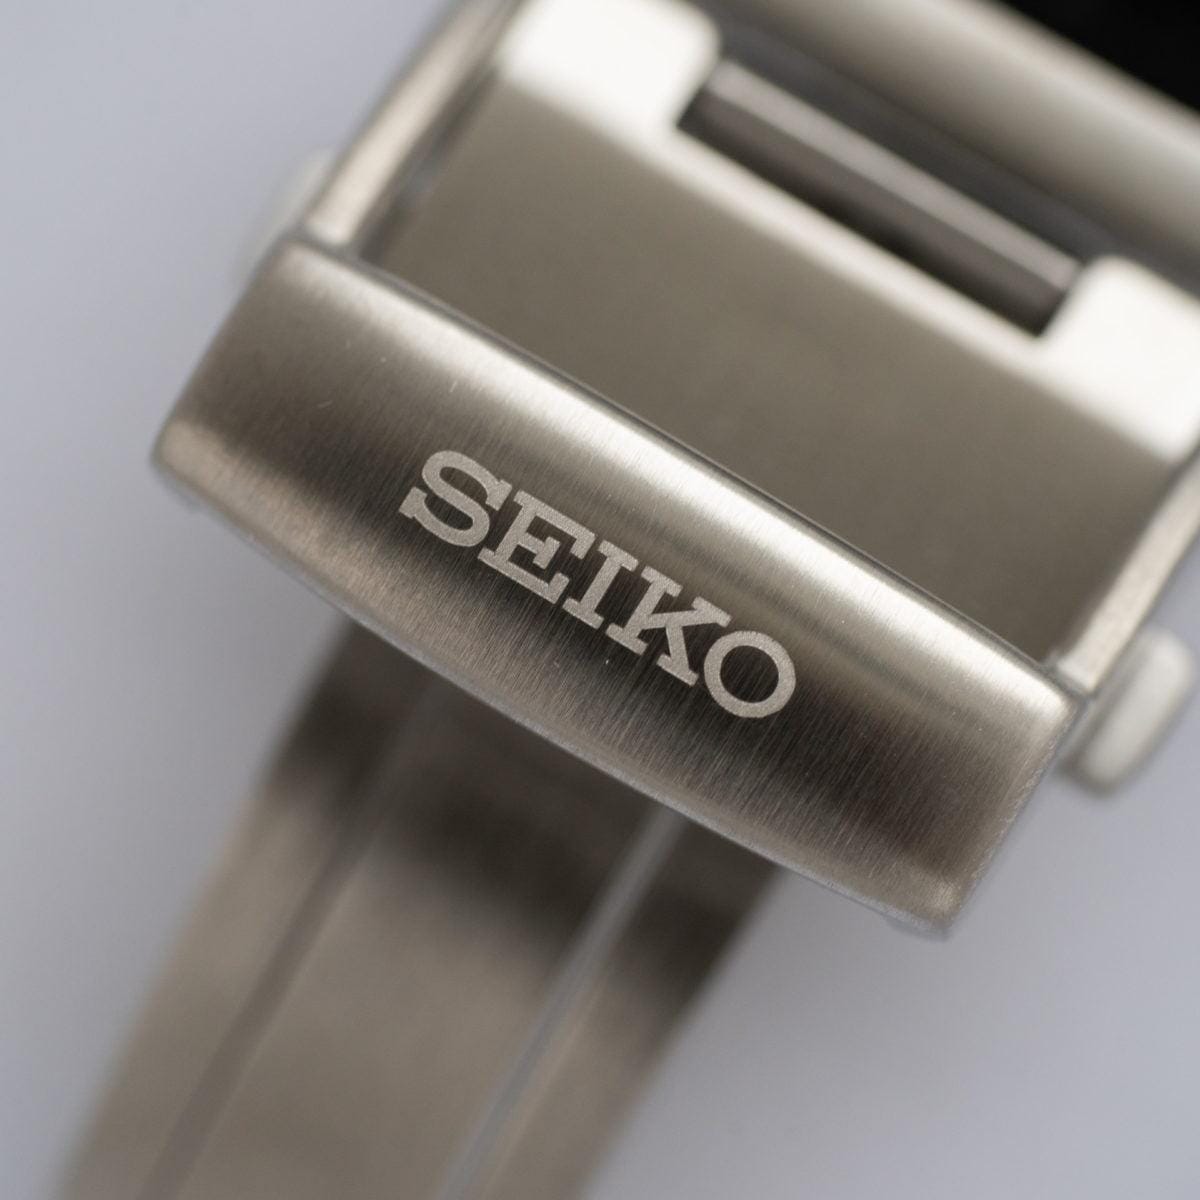 SEIKO Presage SARW051 Ginza Limited - Arbitro